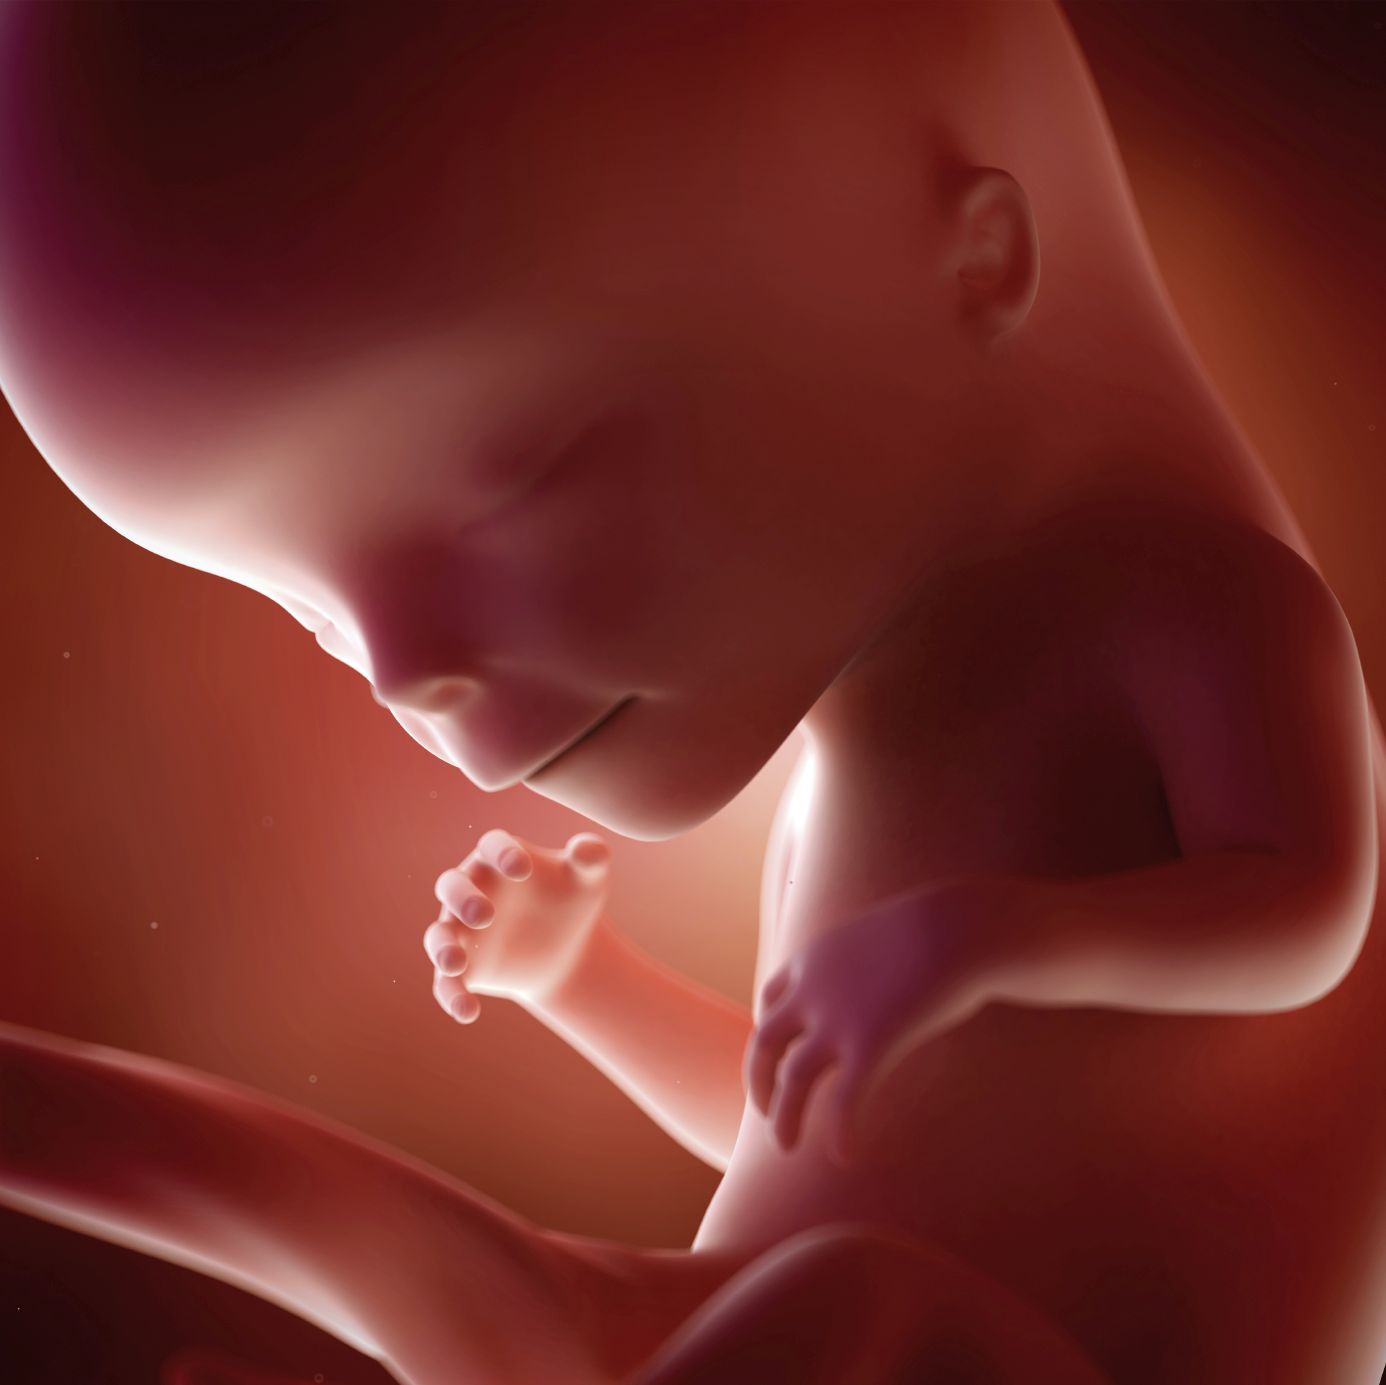 fetus 12 weeks